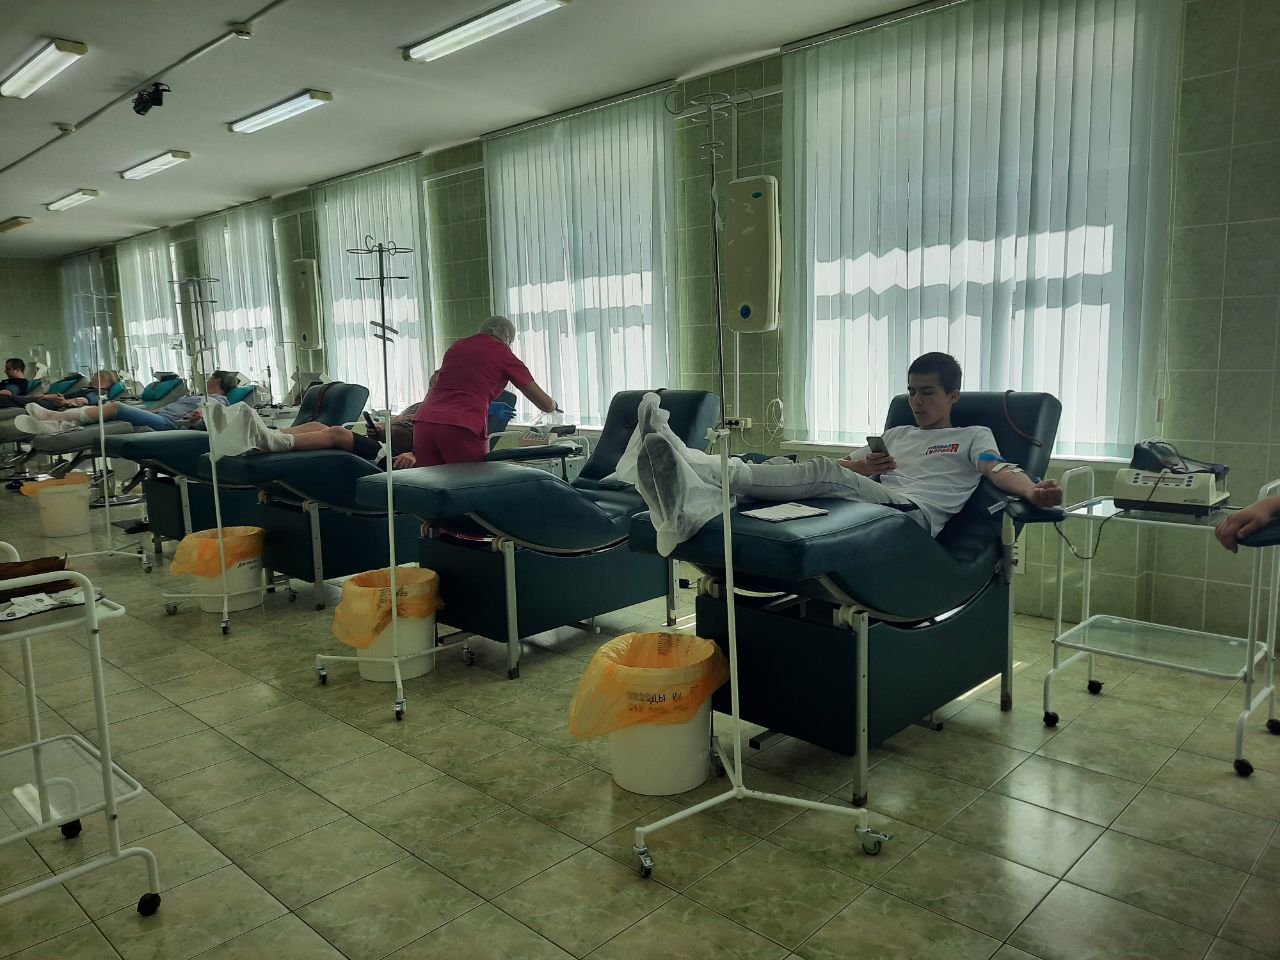 В Тульской области требуется донорская кровь трех групп